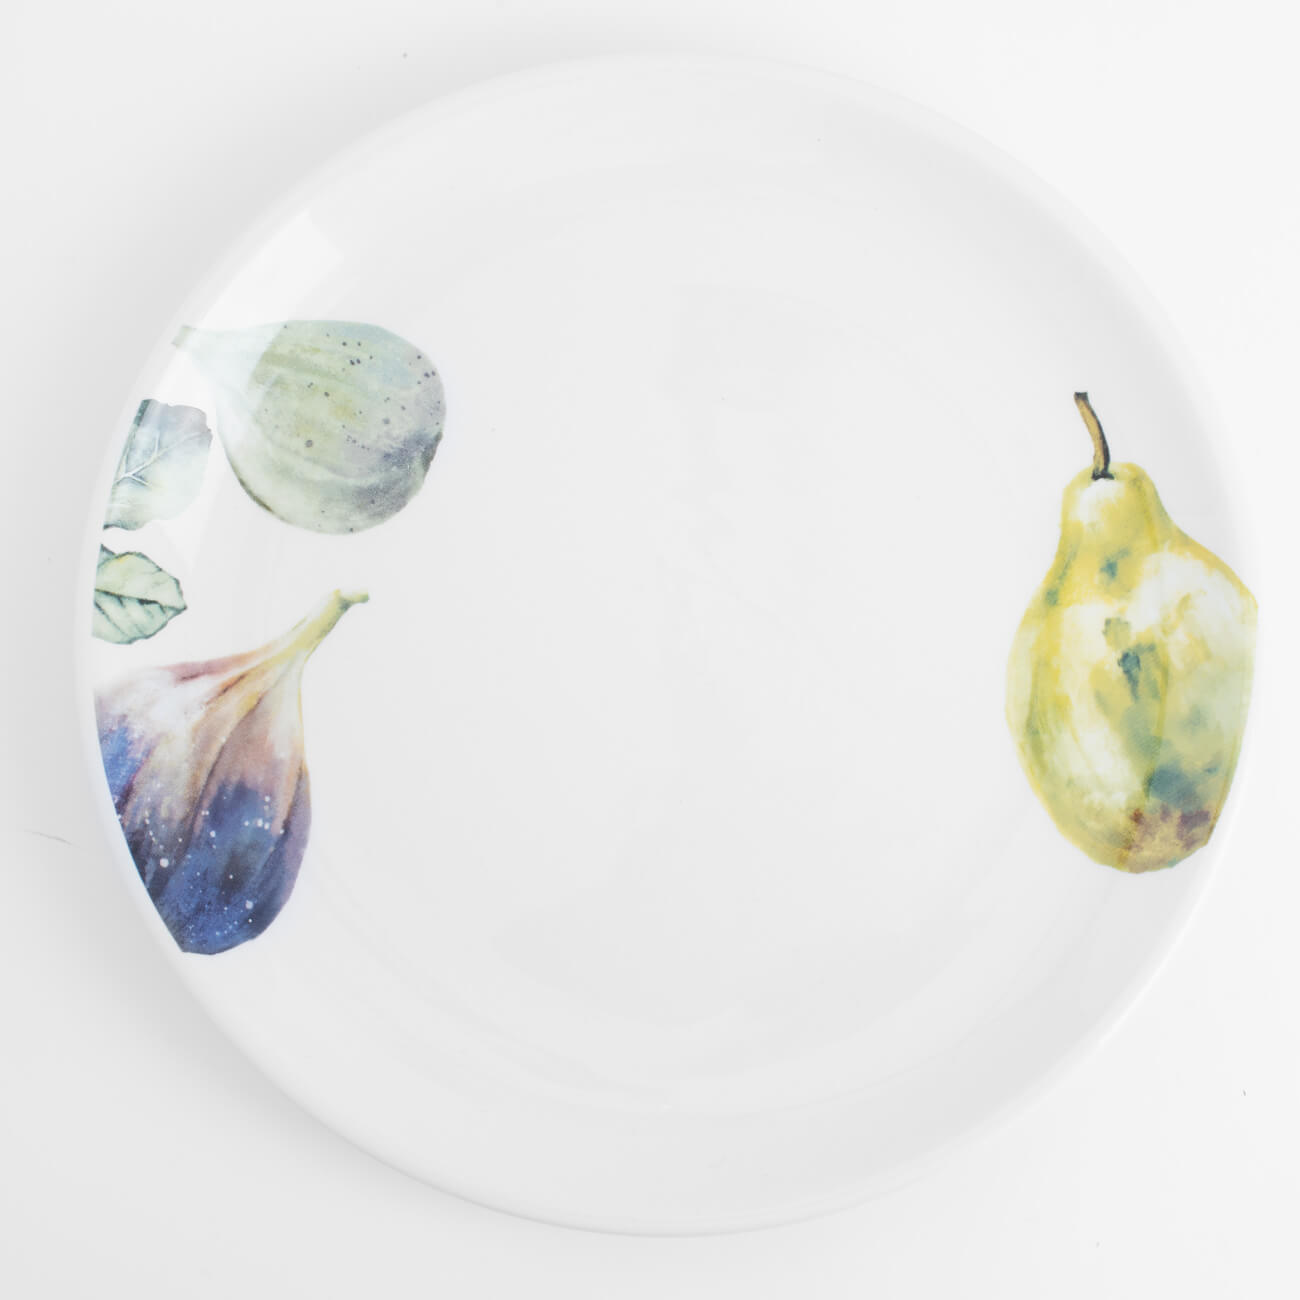 Тарелка закусочная, 21 см, керамика, белая, Инжир и груша, Fruit garden тарелка лилия